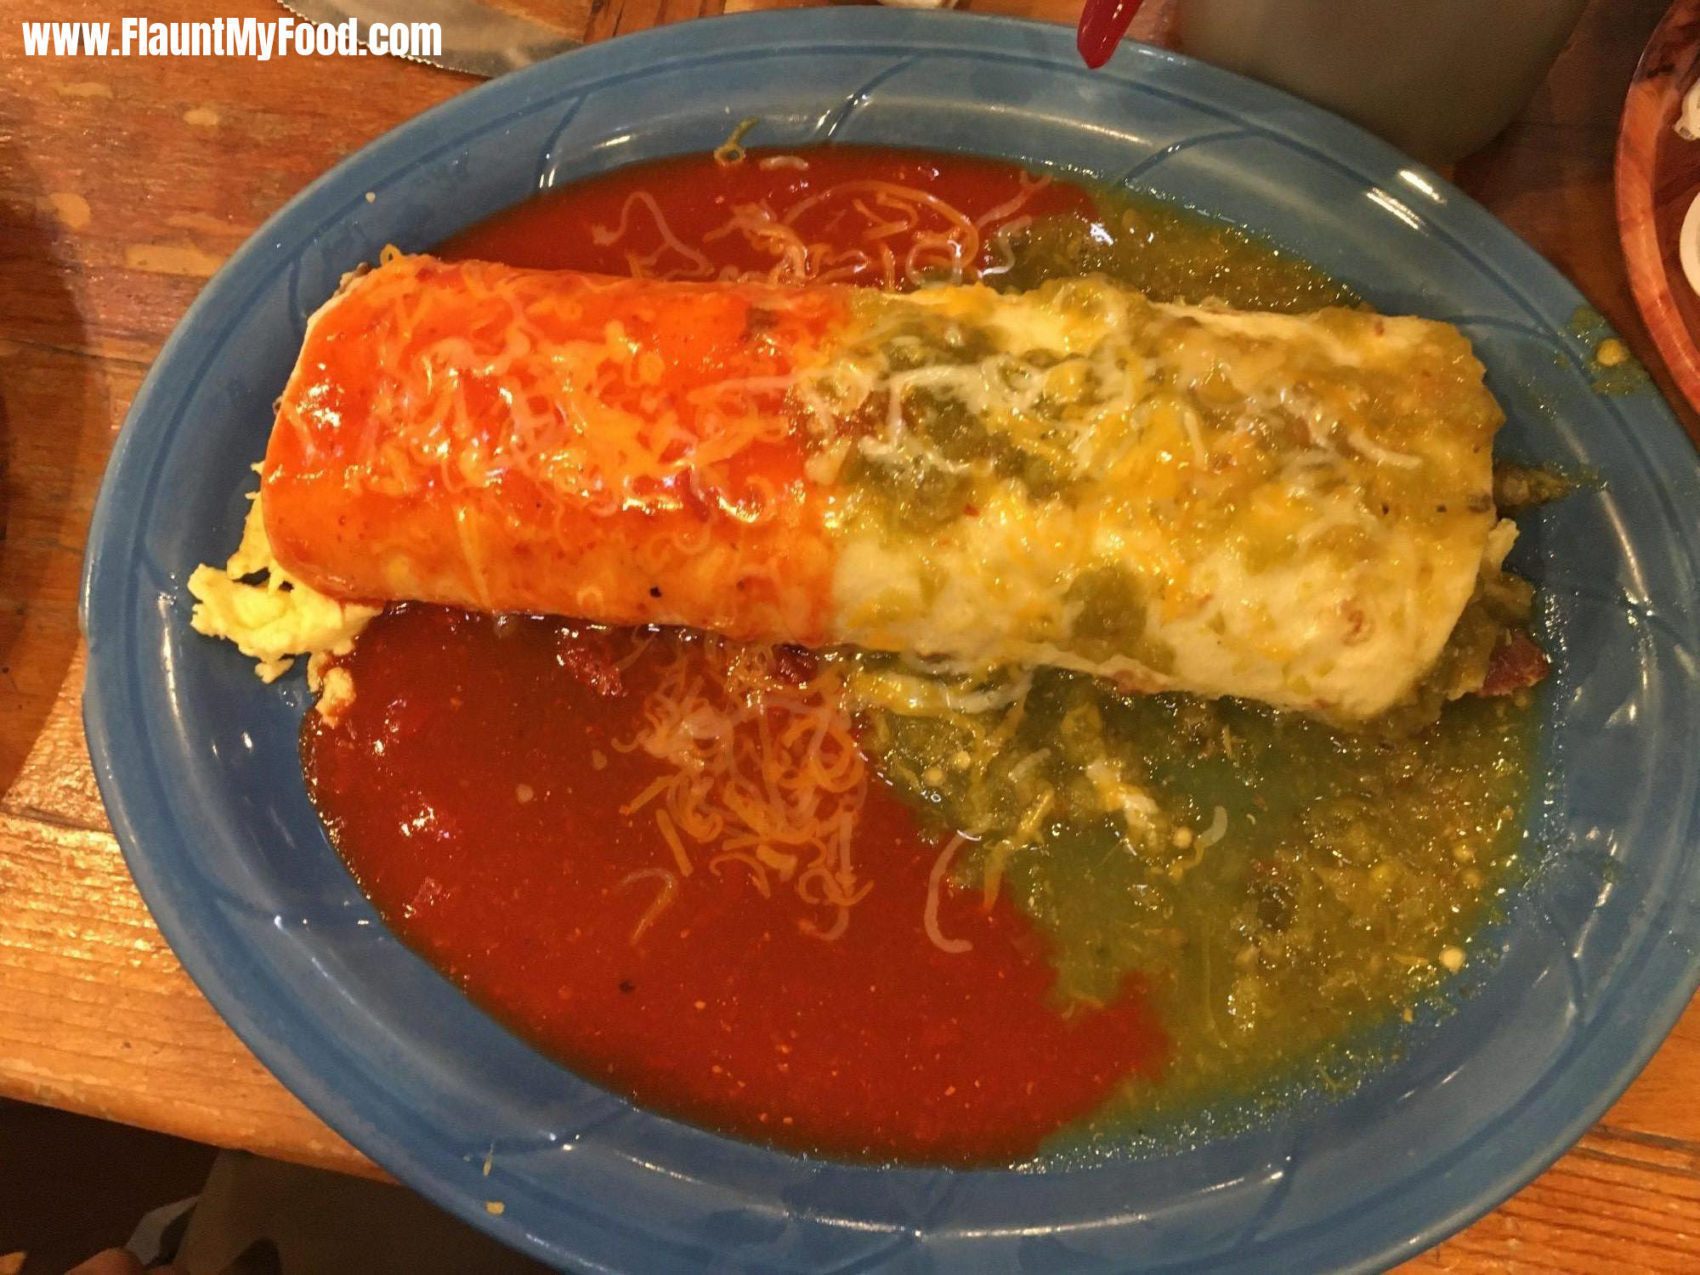 Delicious Green and Red Chile Burrito!